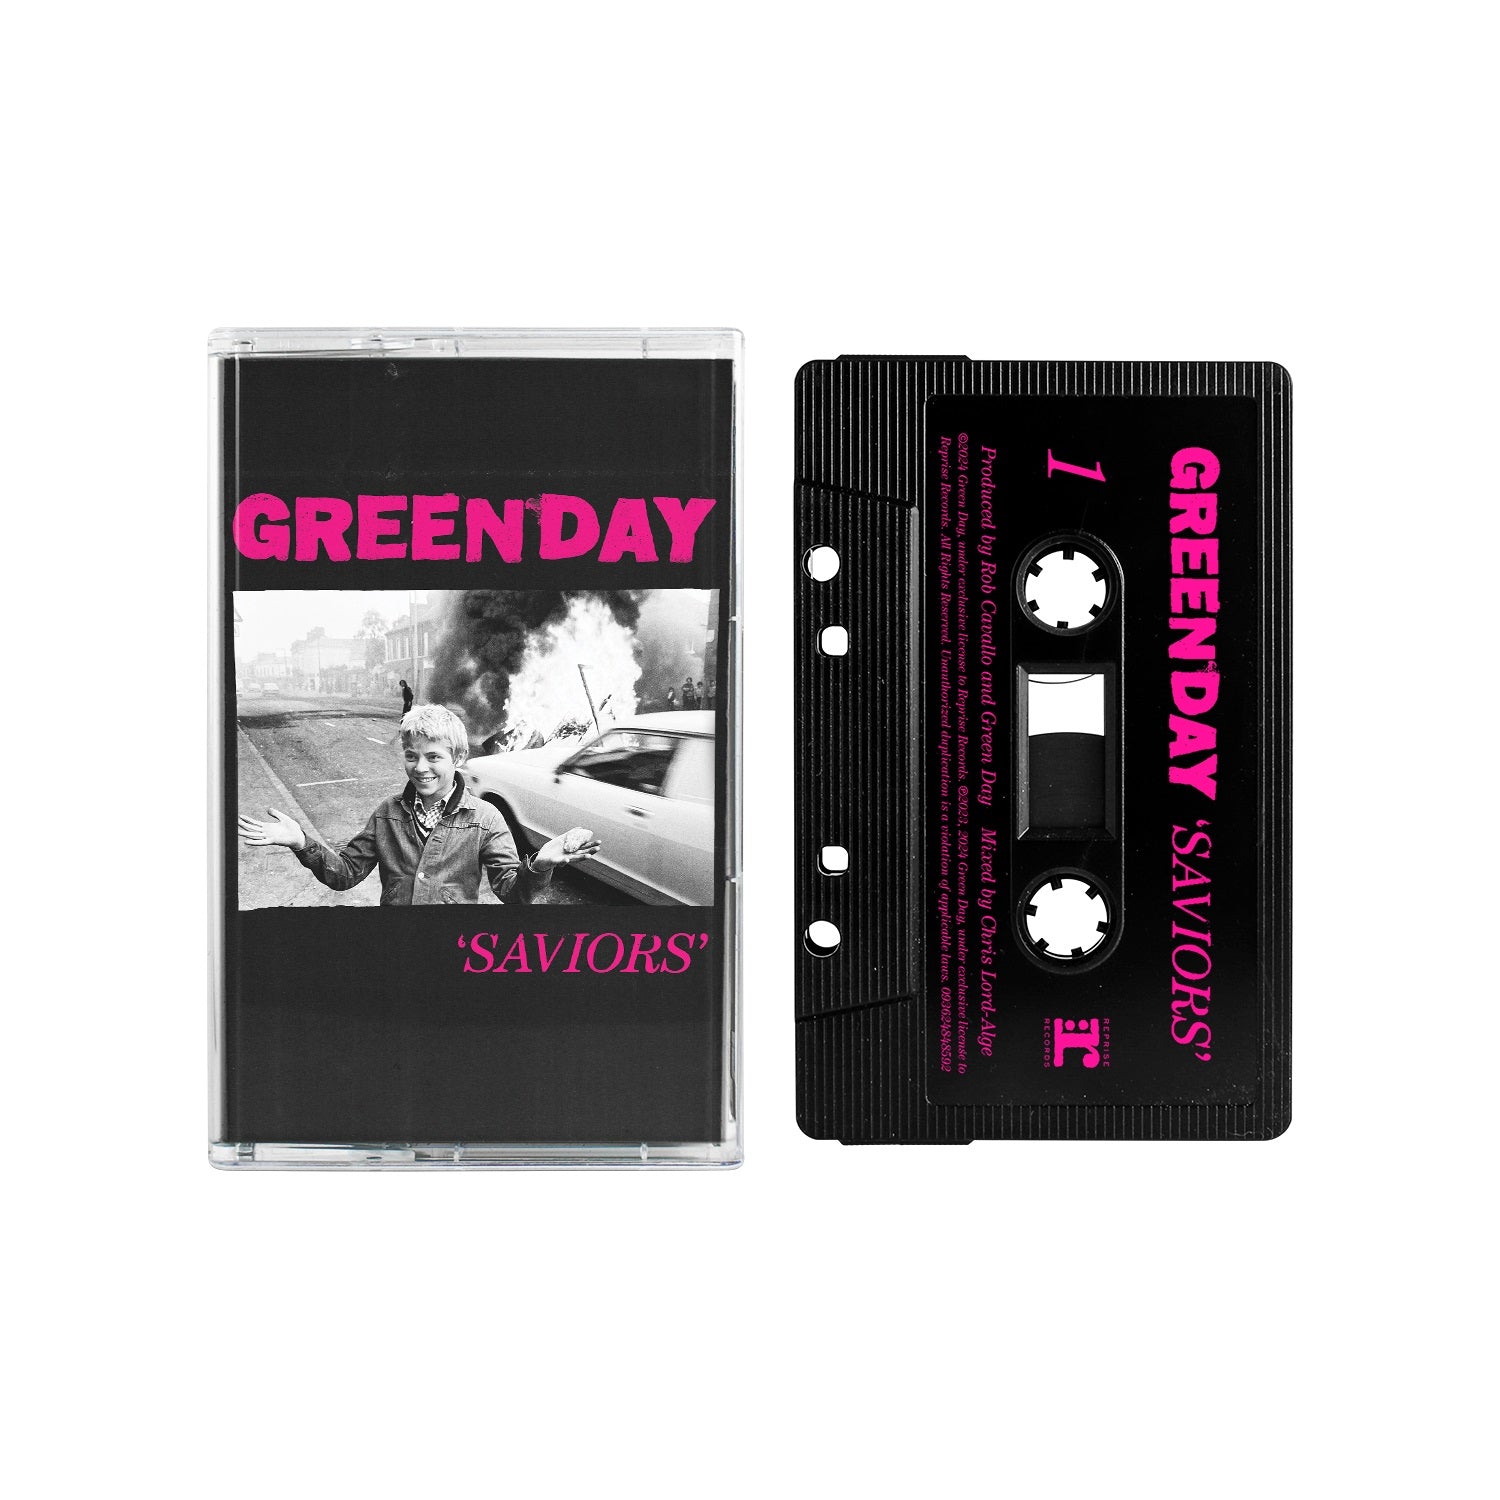 Green Day - Saviors - Cassette - New